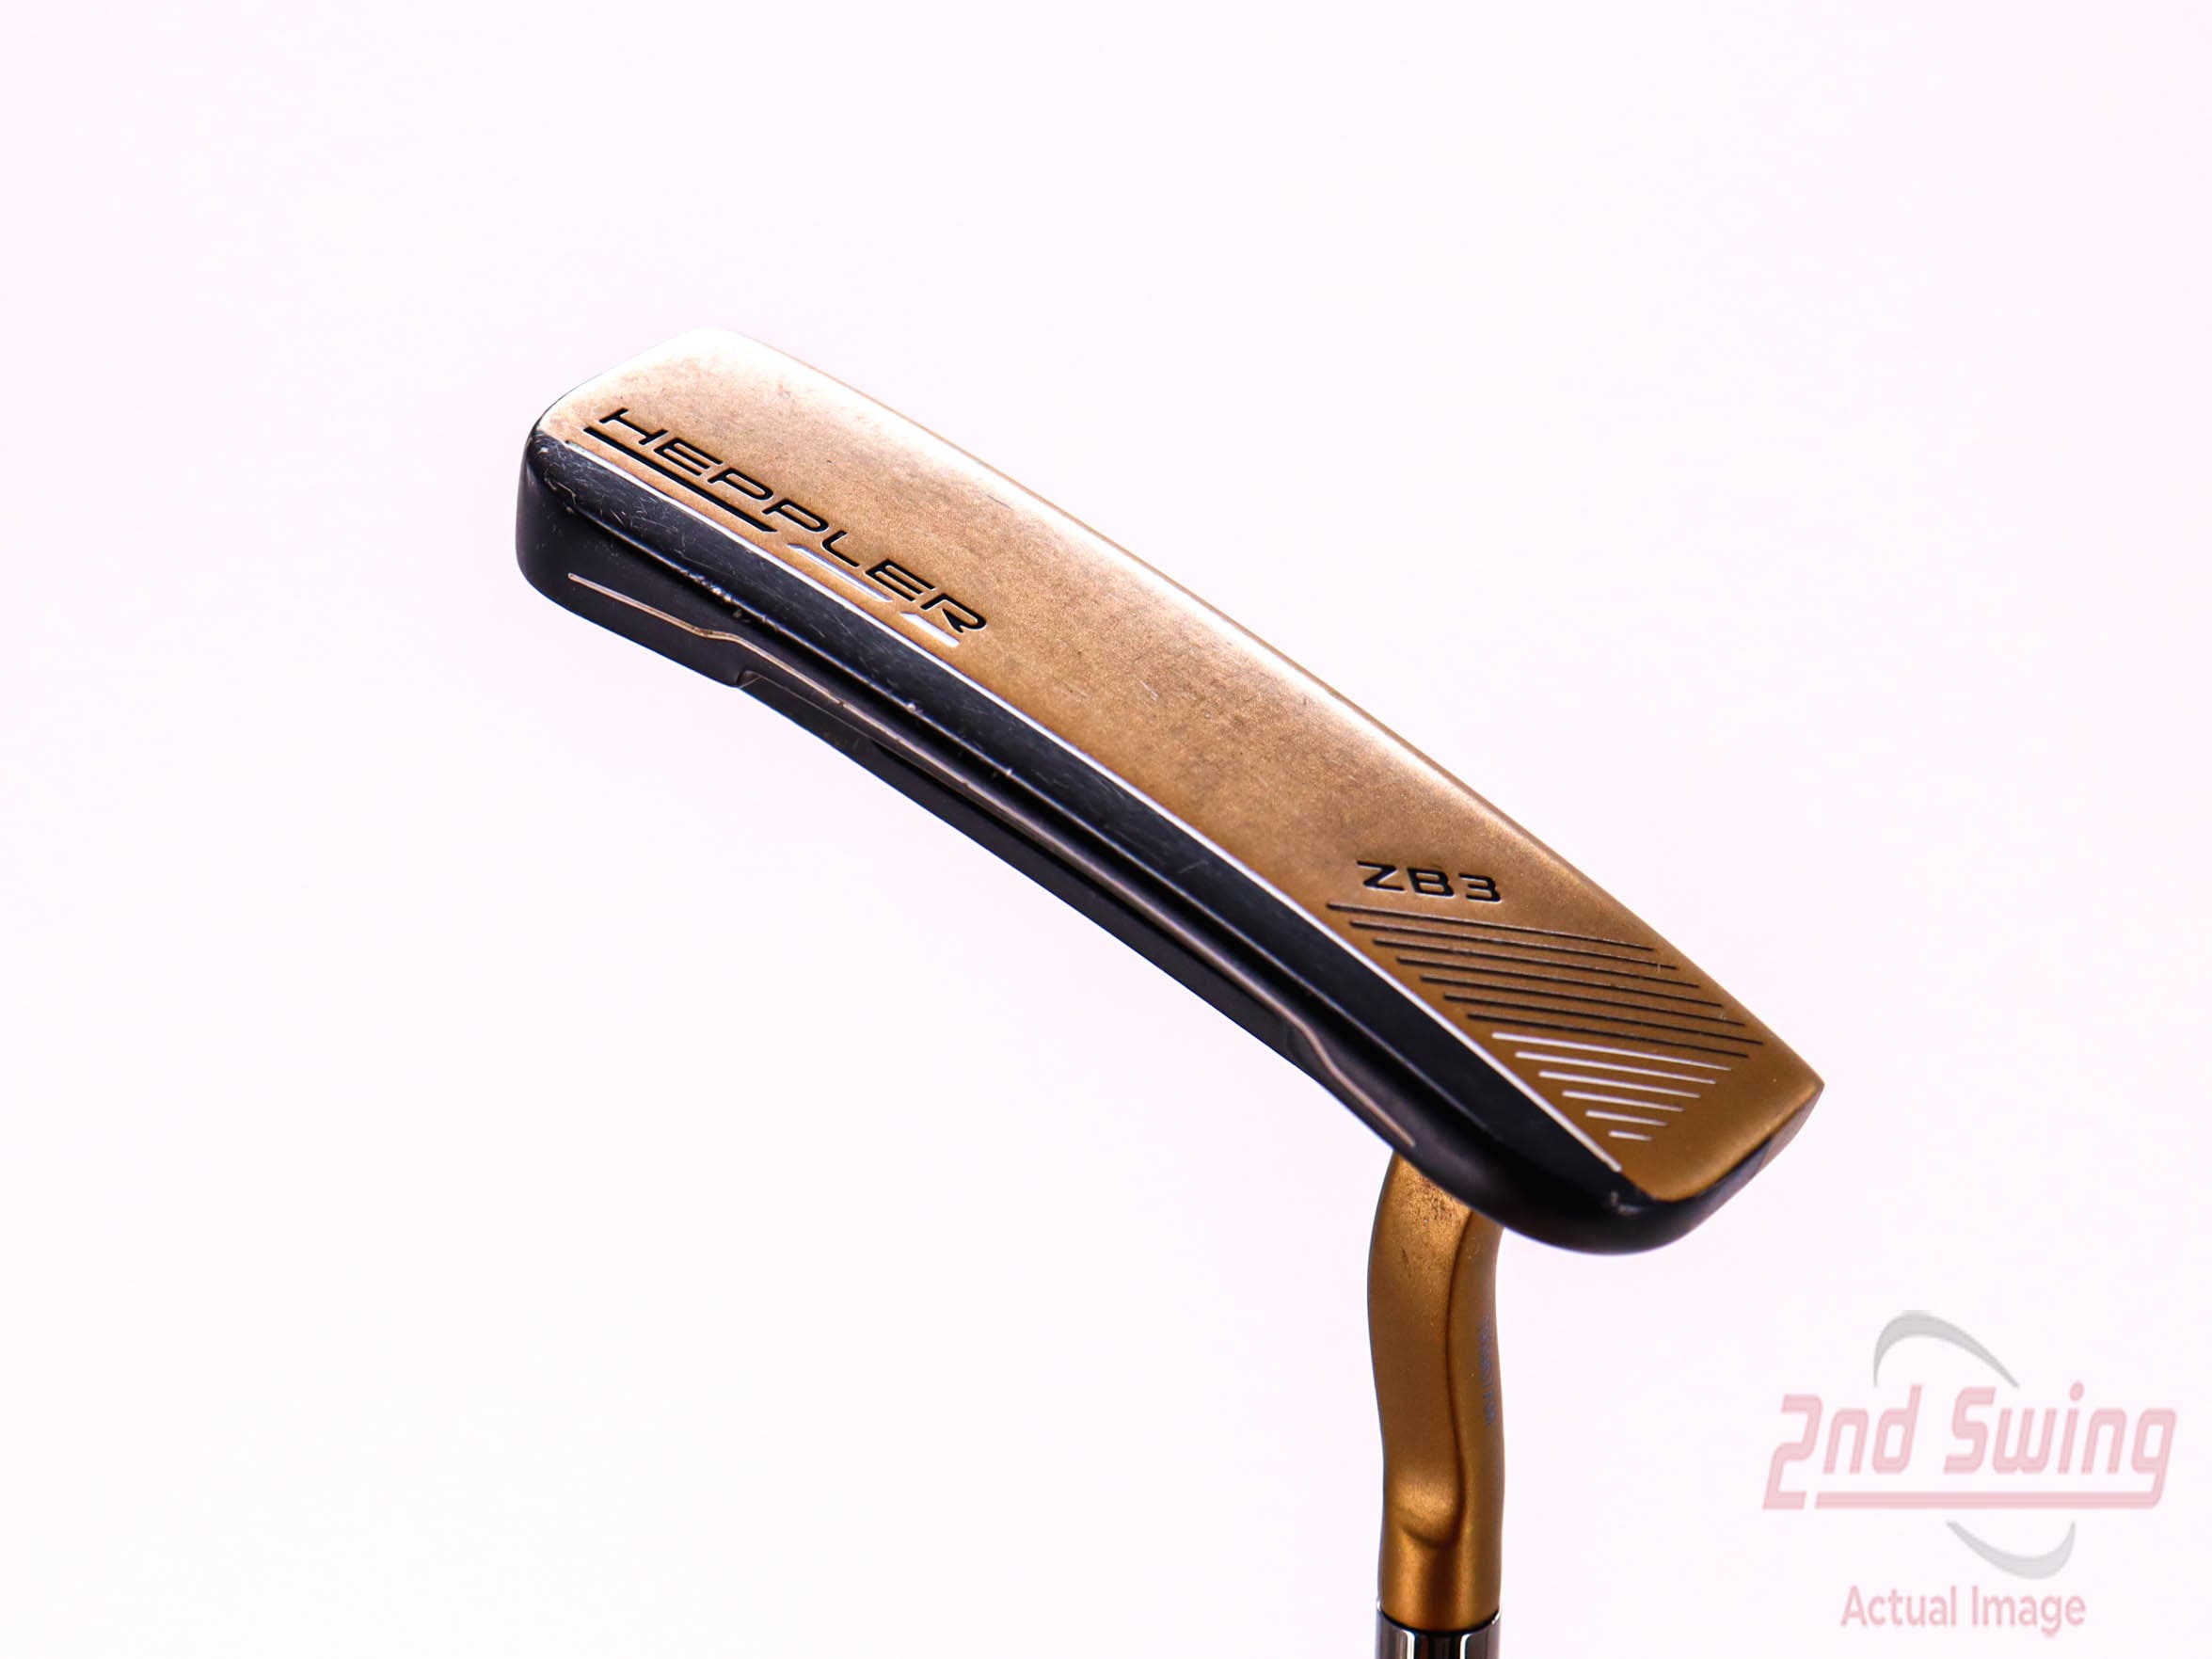 Ping Heppler ZB3 Putter | 2nd Swing Golf